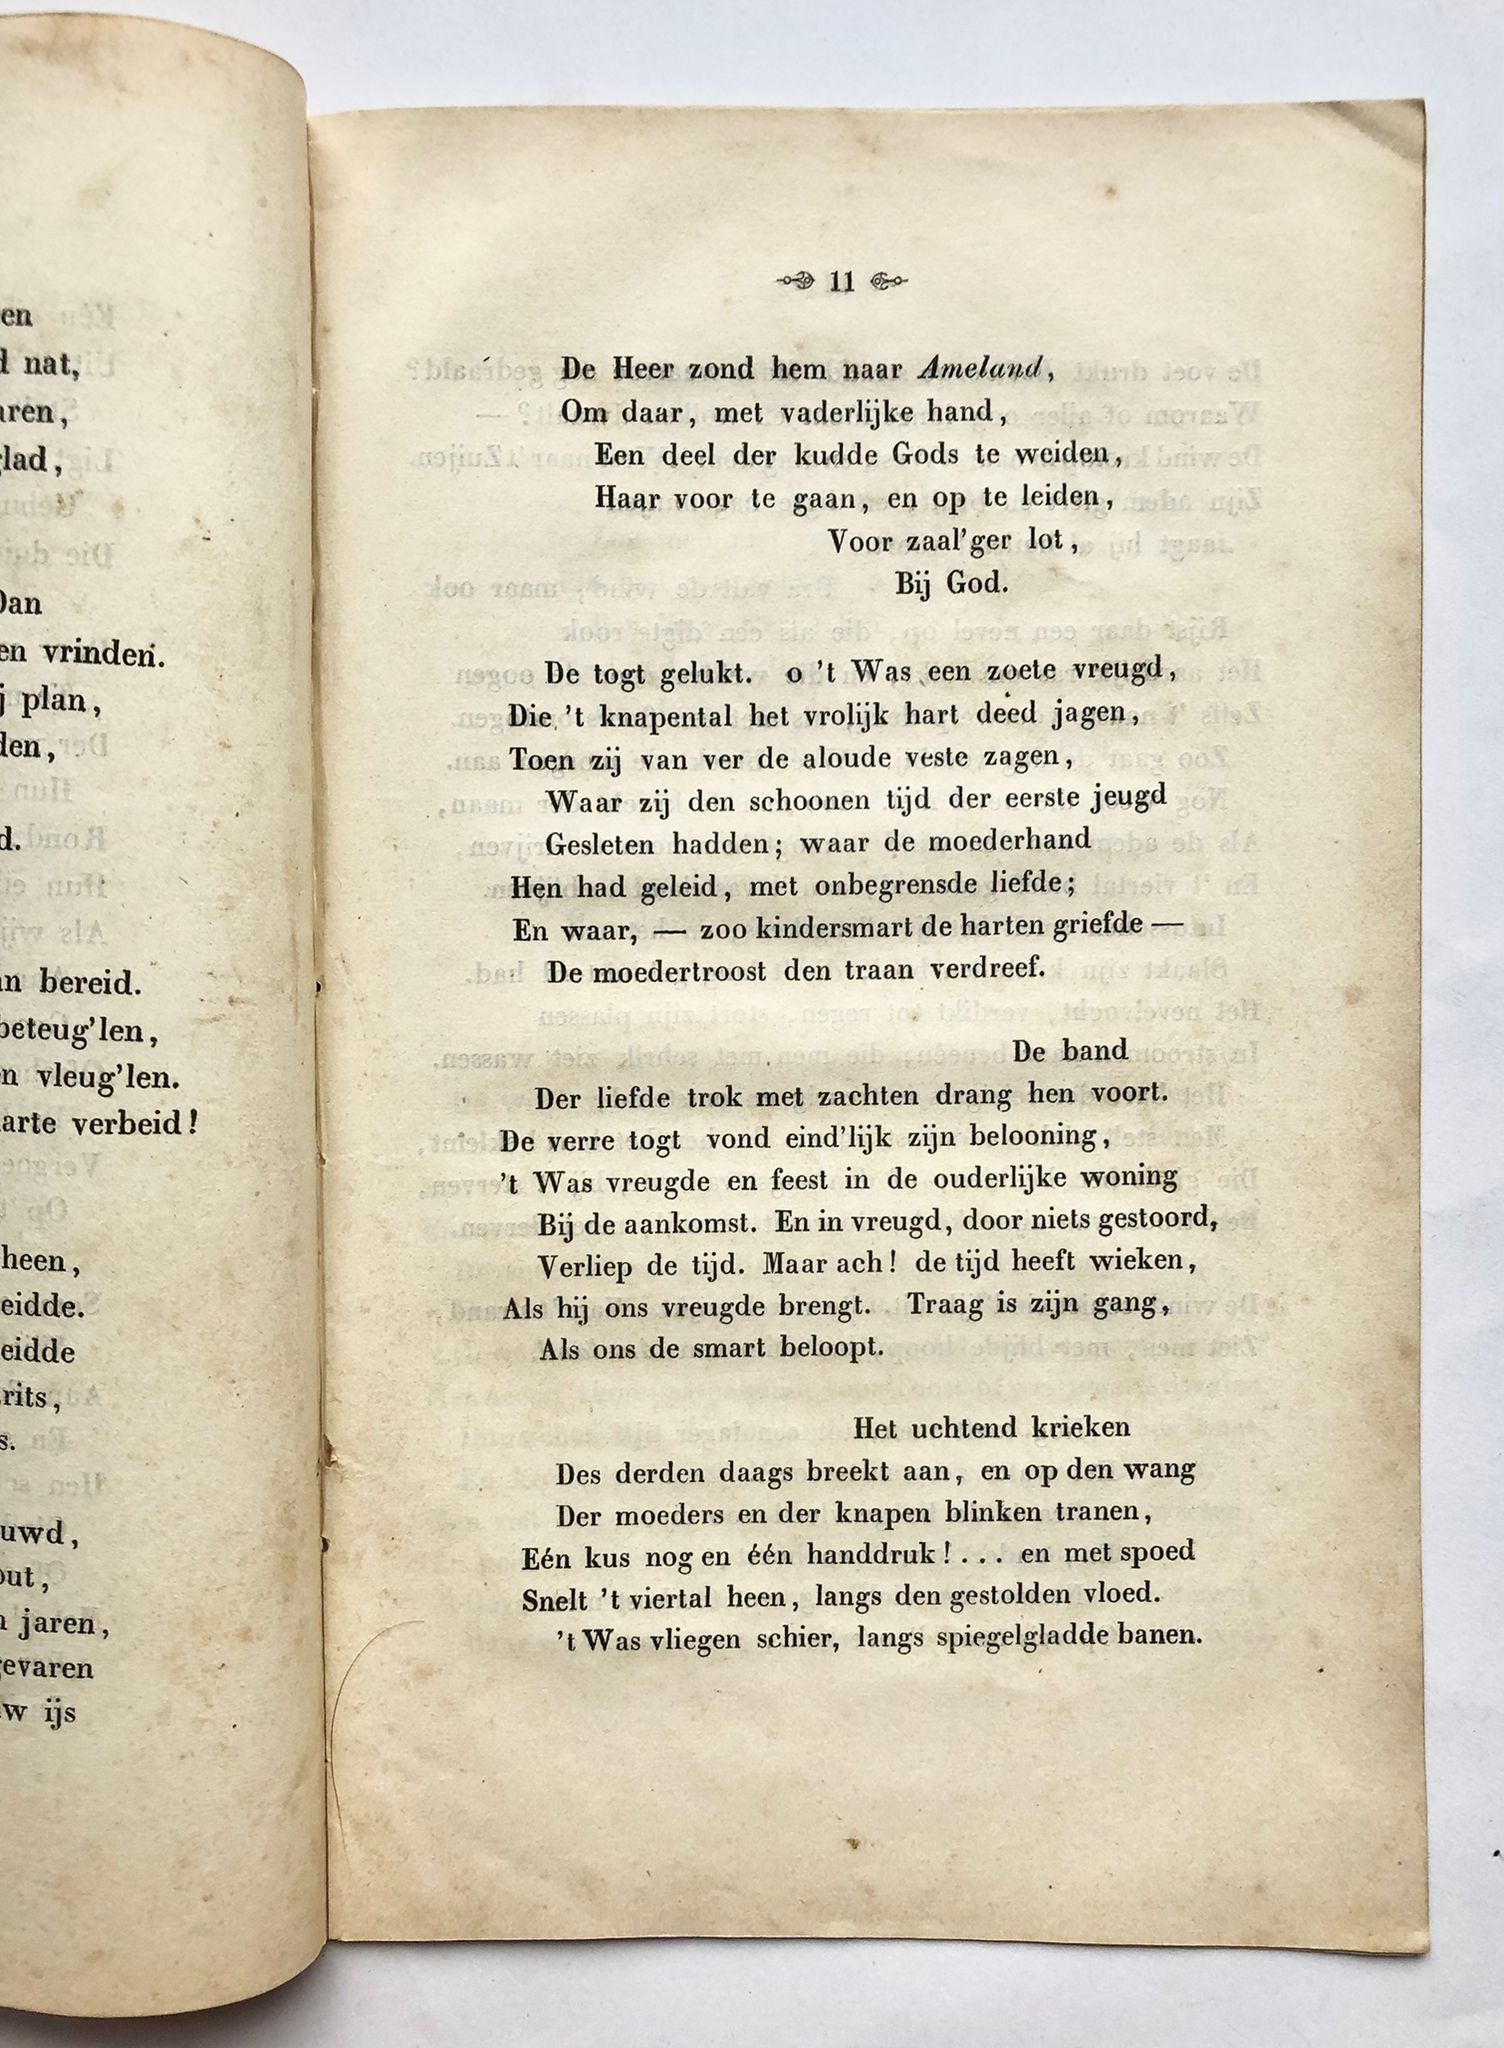 [Ameland, first edition] De togt naar Ameland. Een dichterlijk verhaal, W. Eekhoff, Te Leeuwarden, 1850, 23 pp.